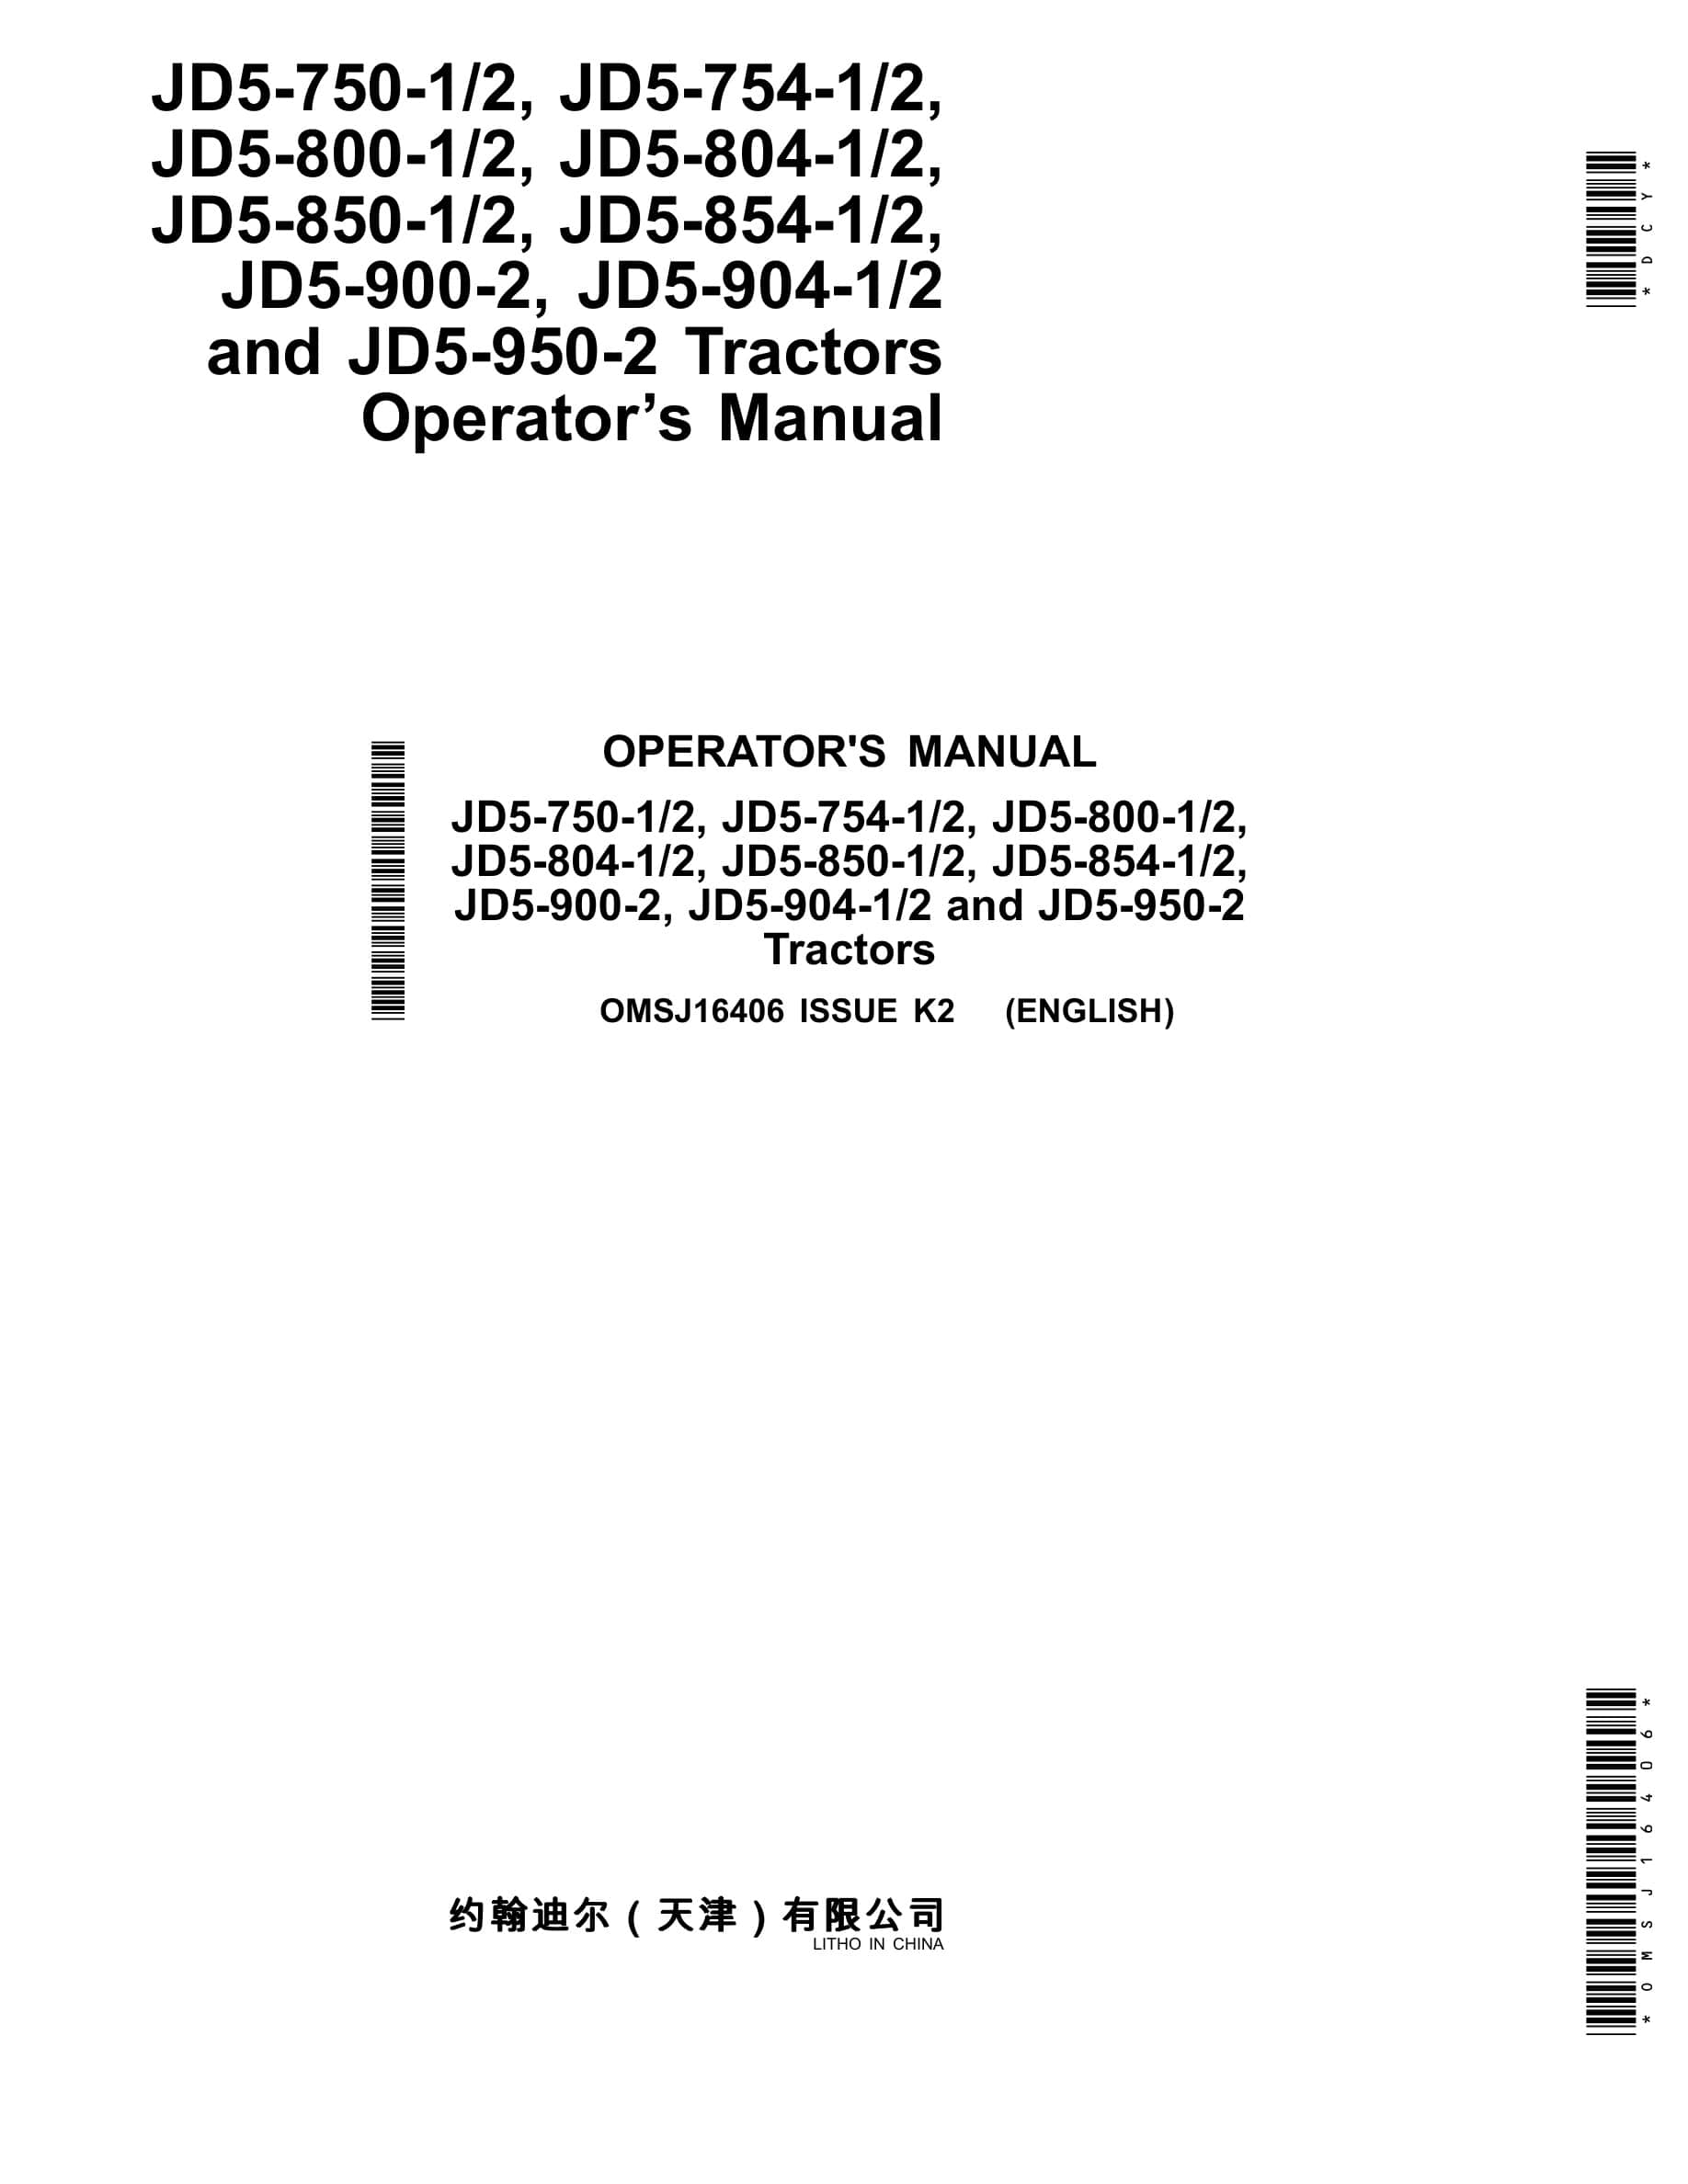 John Deere Jd5-750-1 2, Jd5-754-1 2, Jd5 Operator Manuals OMSJ16406-1